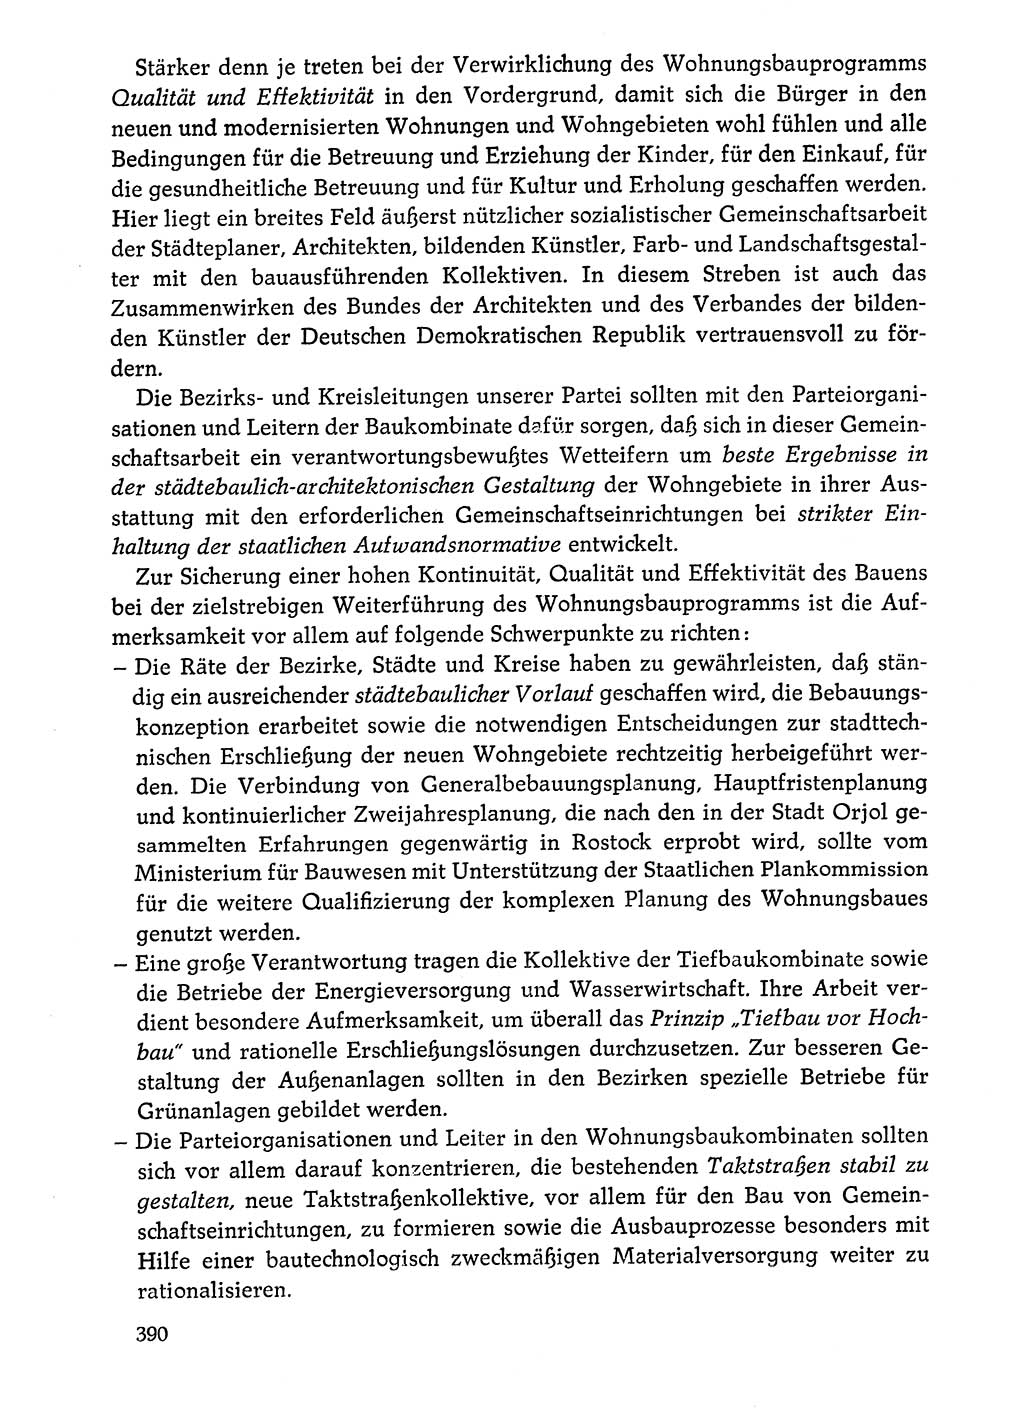 Dokumente der Sozialistischen Einheitspartei Deutschlands (SED) [Deutsche Demokratische Republik (DDR)] 1976-1977, Seite 390 (Dok. SED DDR 1976-1977, S. 390)